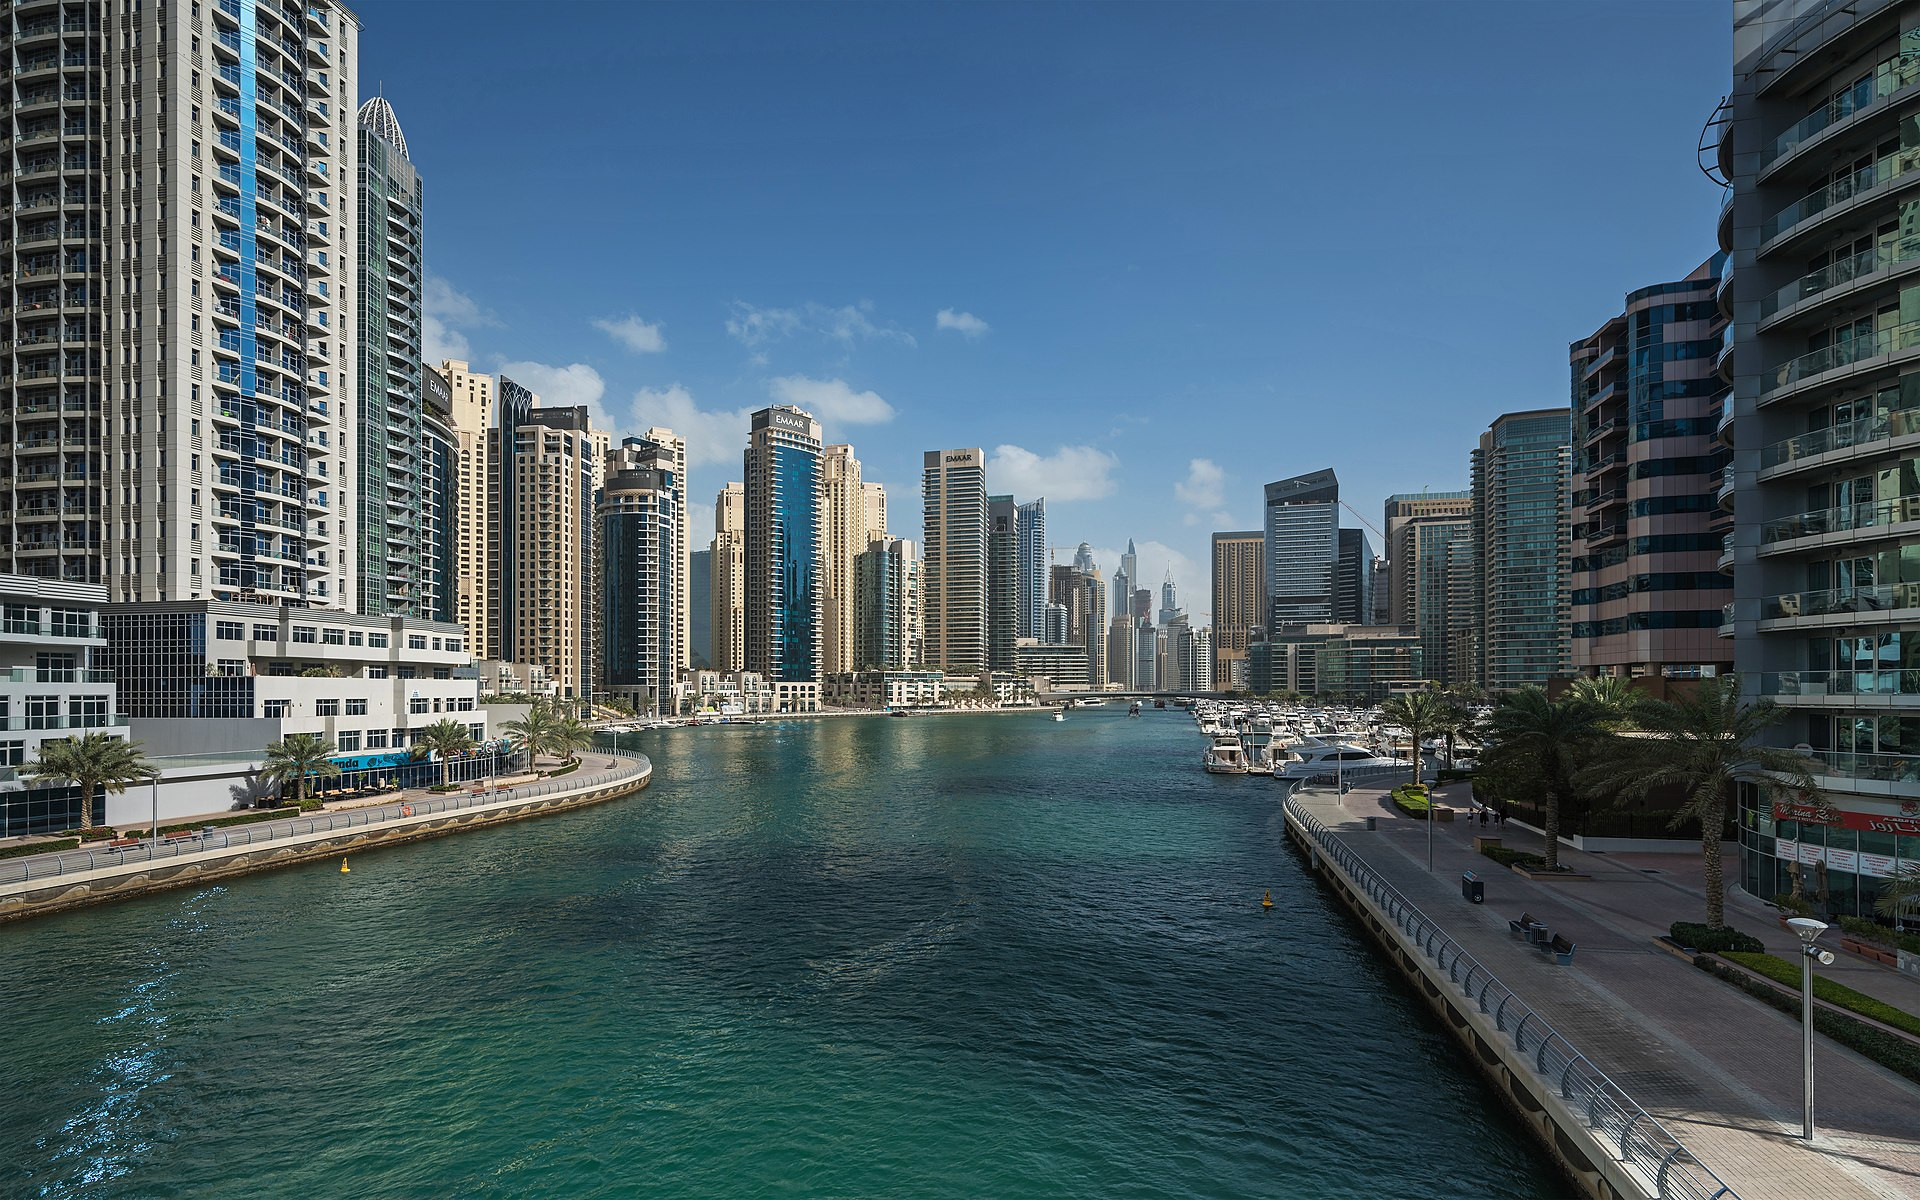 Vereinigte Arabische Emirate: Investieren in Immobilien mit Zukunftssicherheit